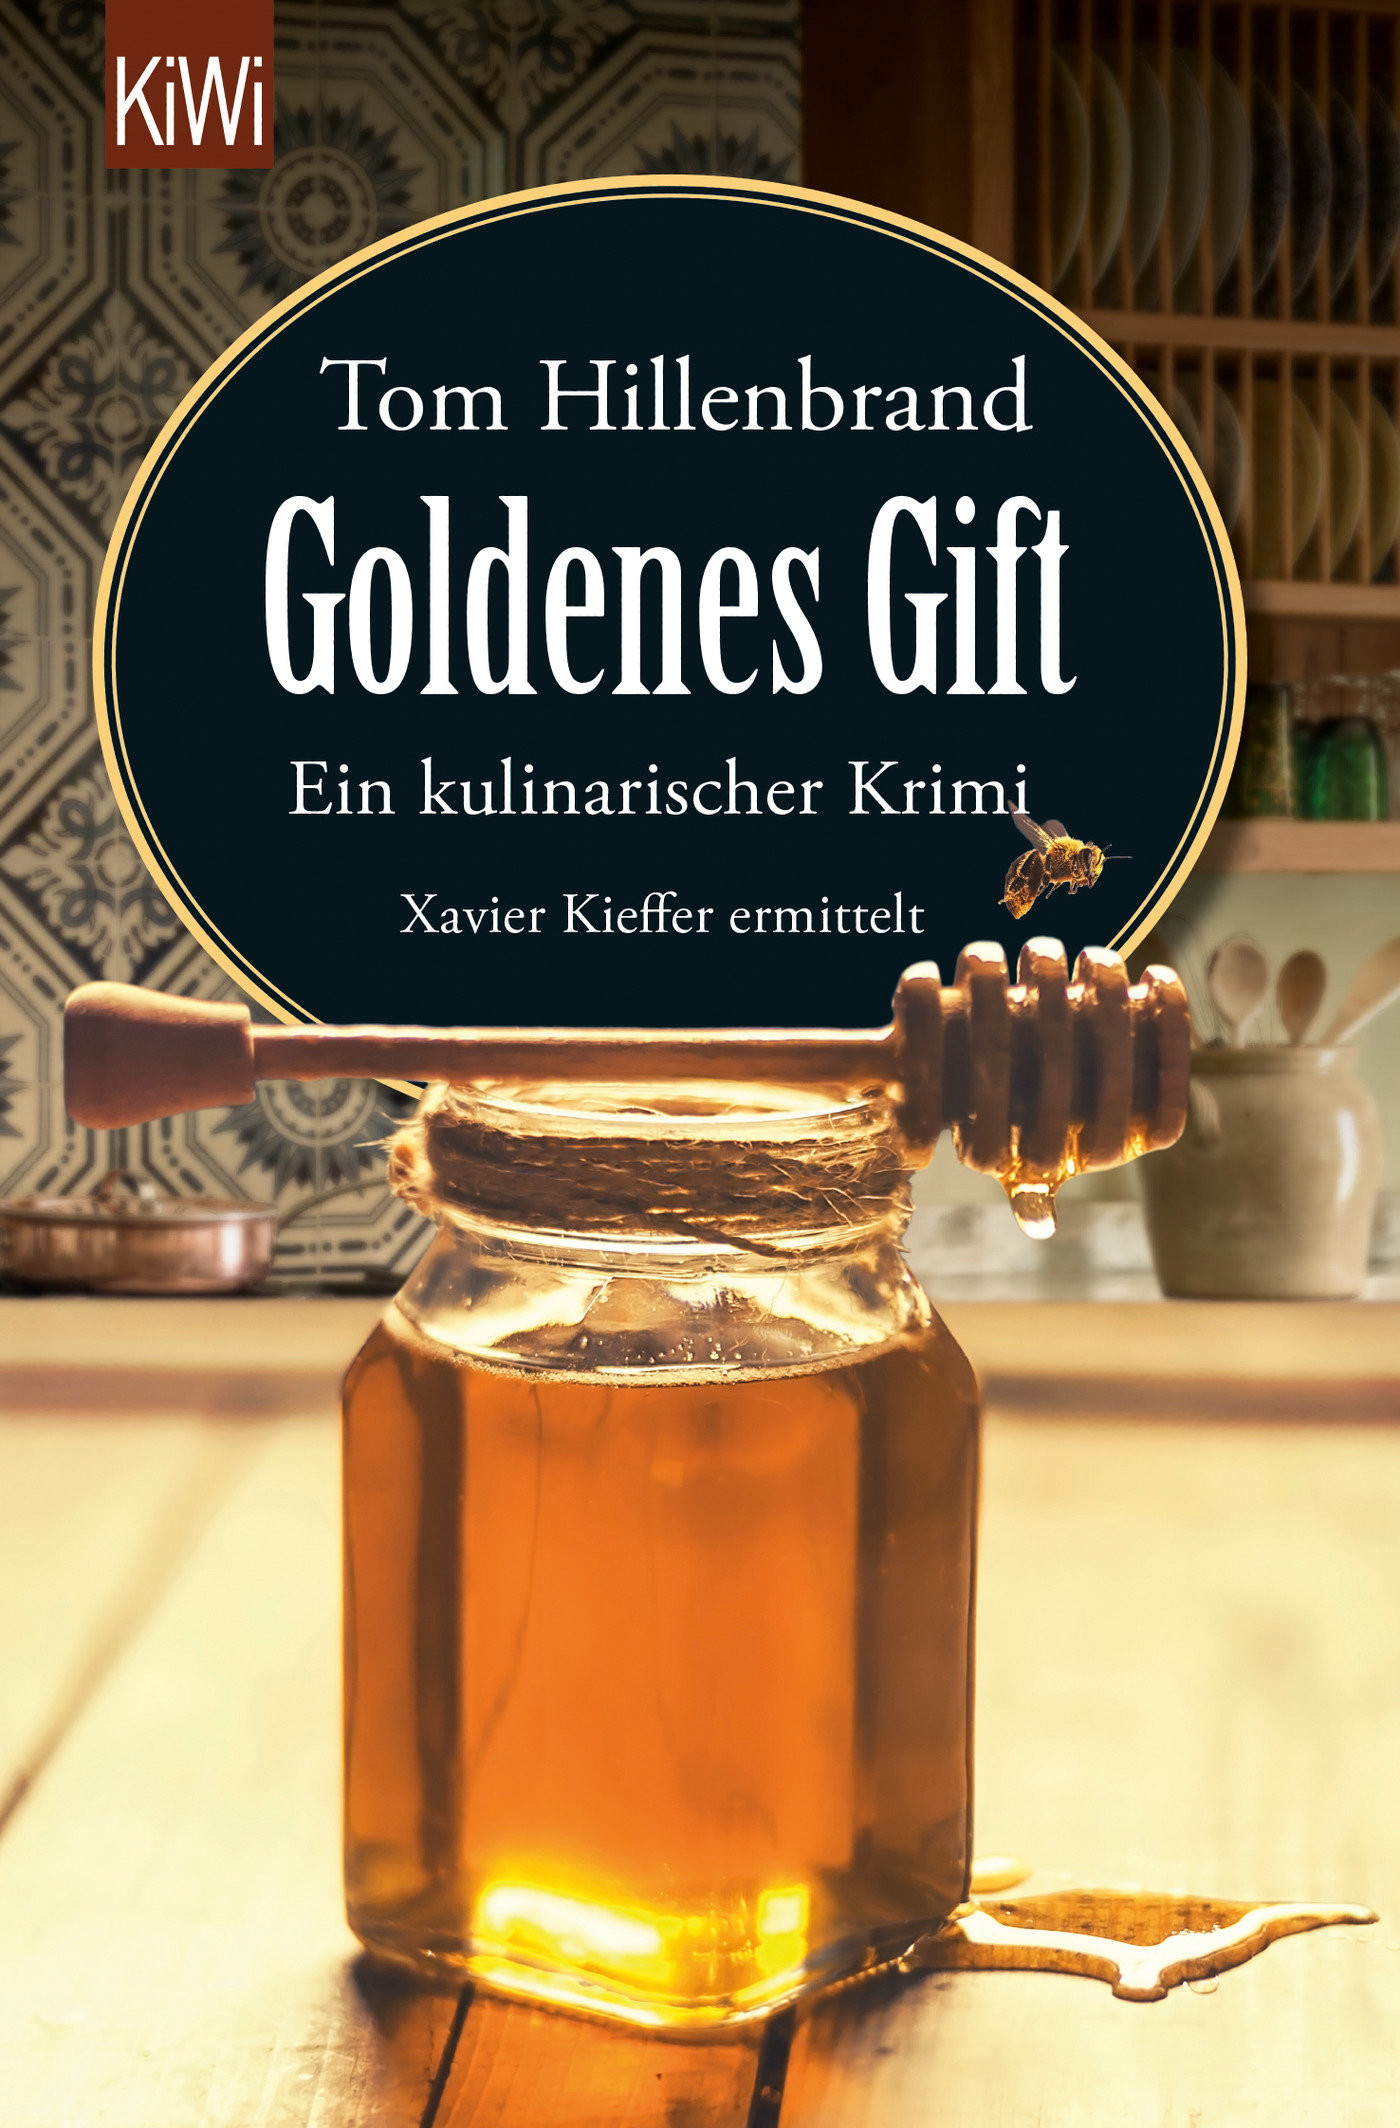 Titelbild zum Buch: Goldenes Gift